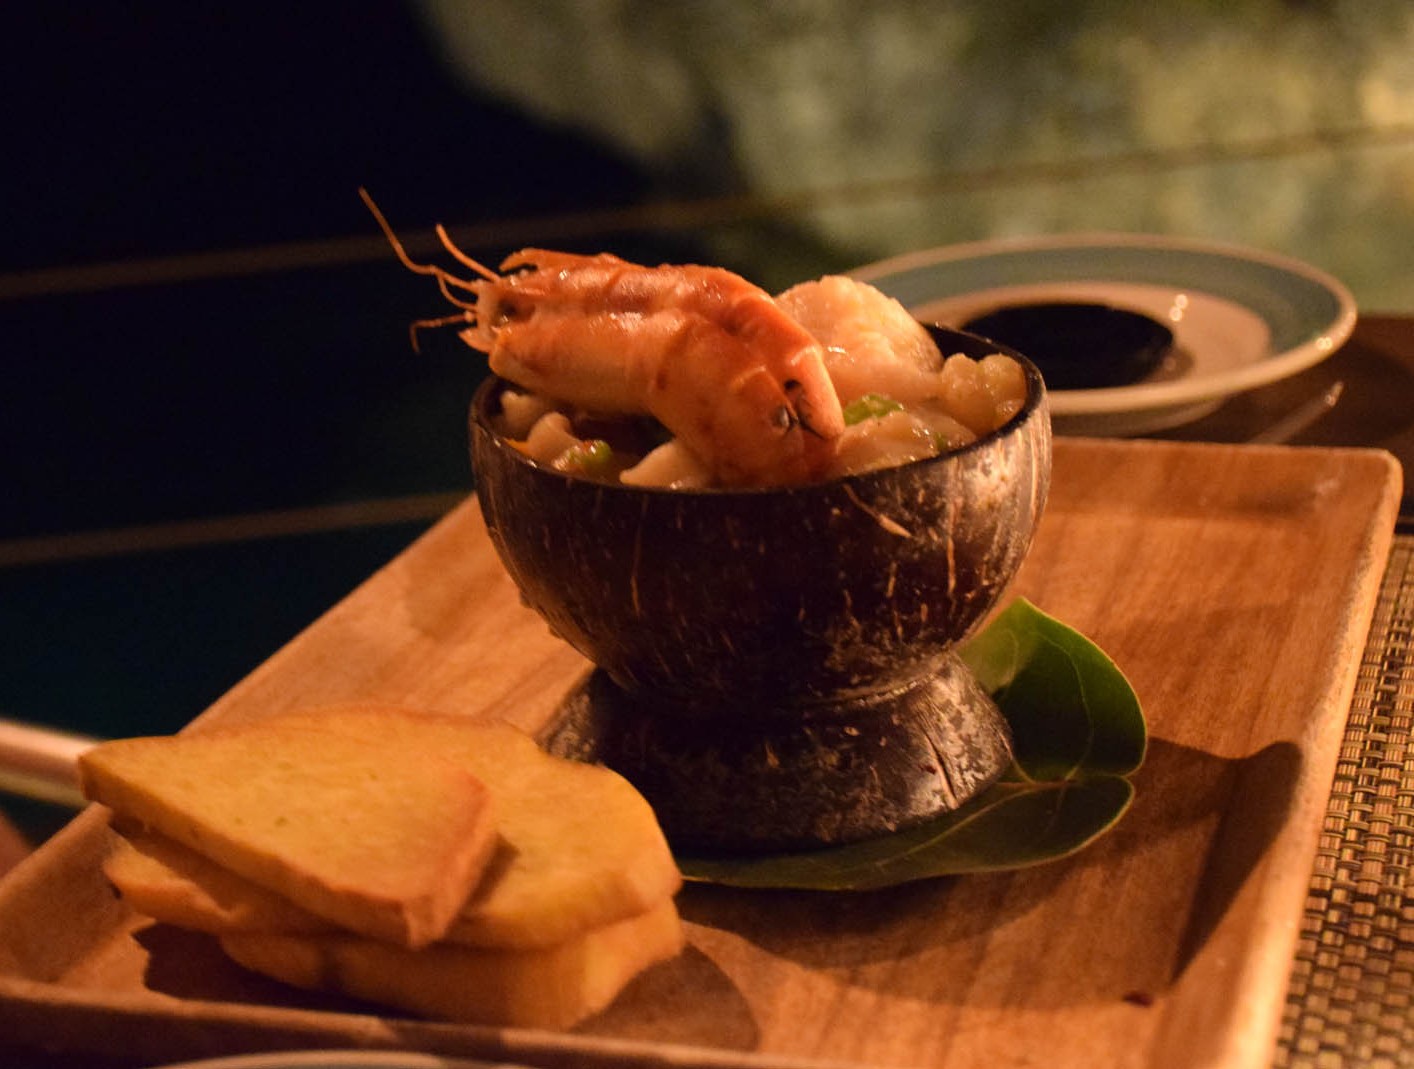 Prato do marido: lagosta, camarão, lula e peixe cozidos lentamente no rum.